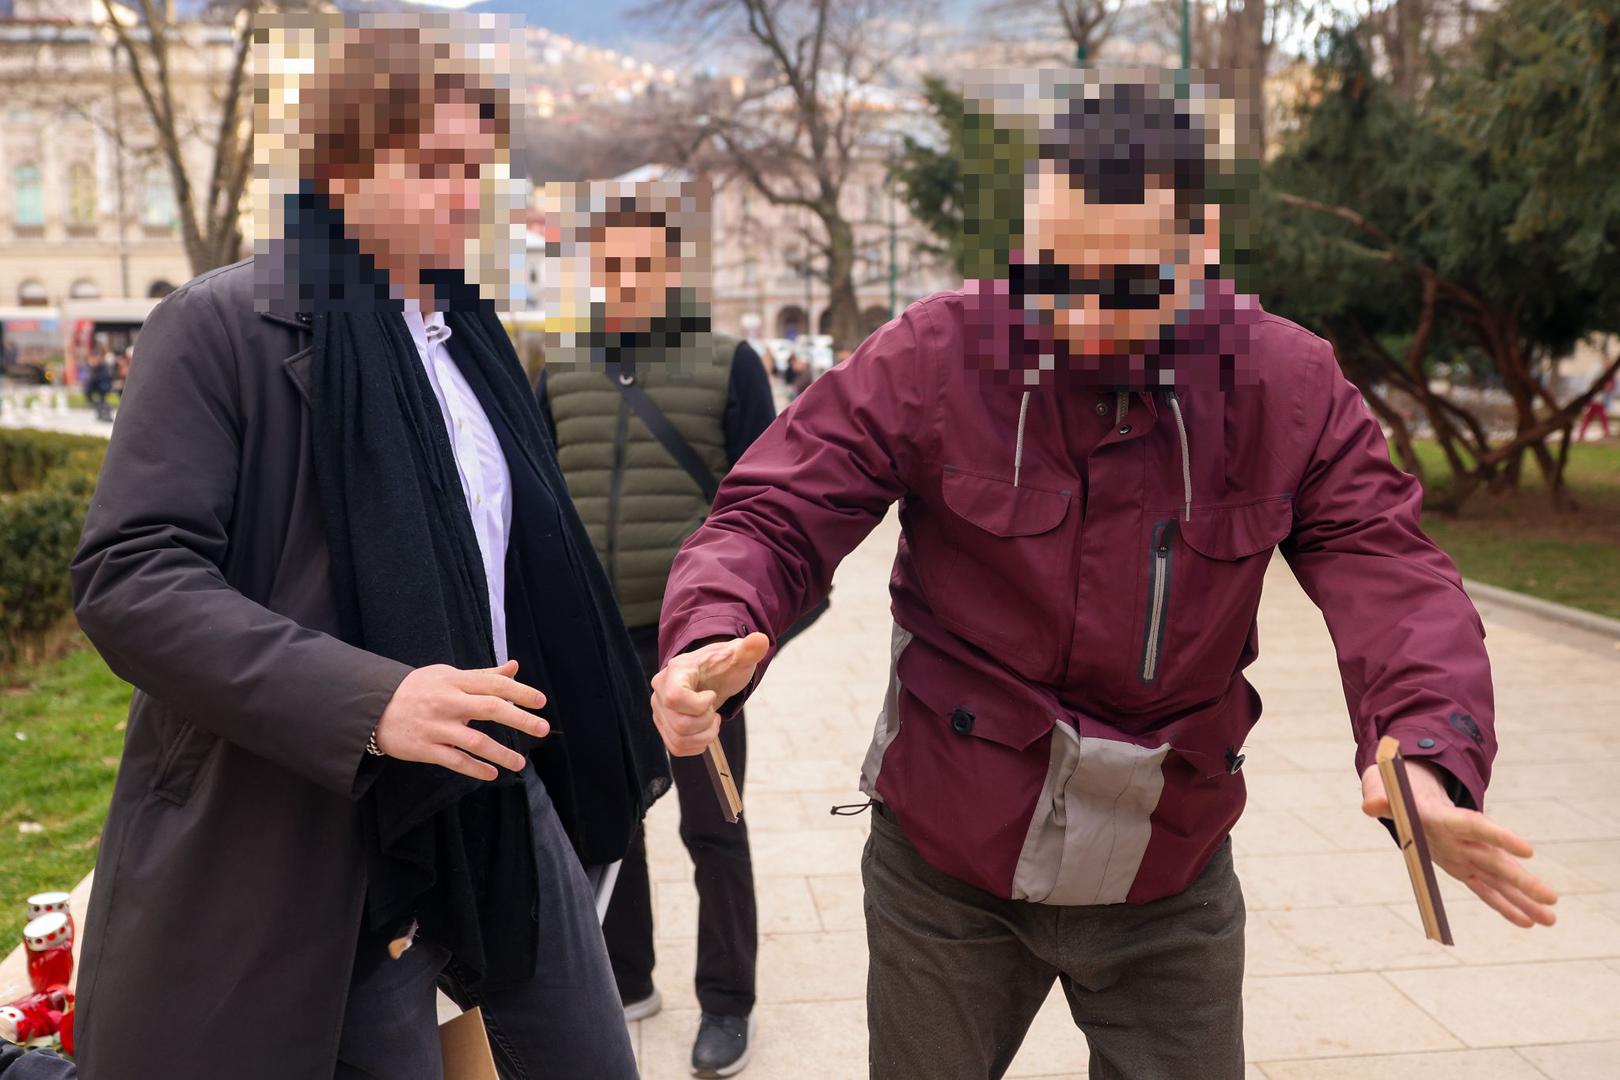 Naime, jedan je prolaznik uzeo fotografiju Alekseja Navaljnog te je potom uništio. 